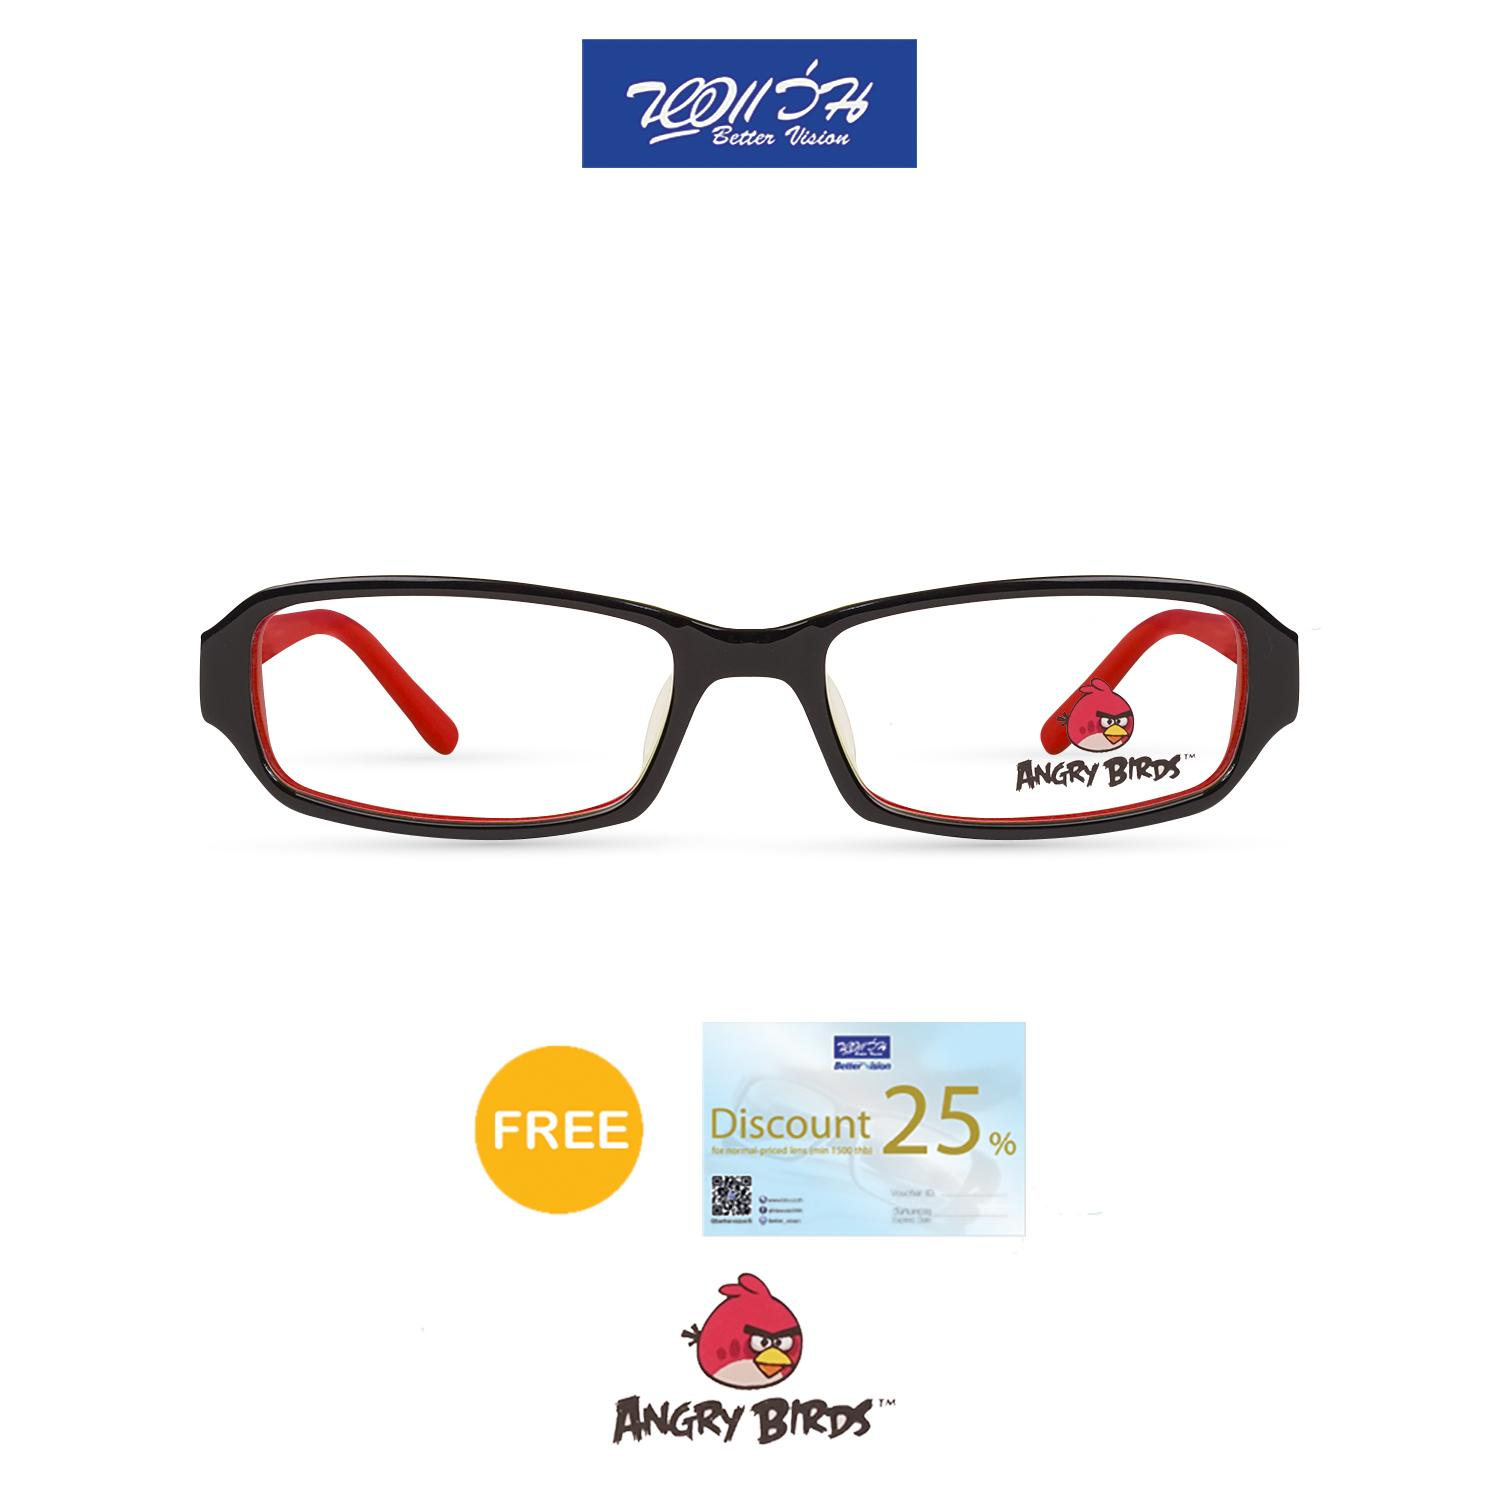 กรอบแว่นตาเด็ก แองกี้ เบิร์ด ANGRY BIRDS Child glasses แถมฟรีส่วนลดค่าตัดเลนส์ 25%  free 25% lens discount รุ่น FAG22104